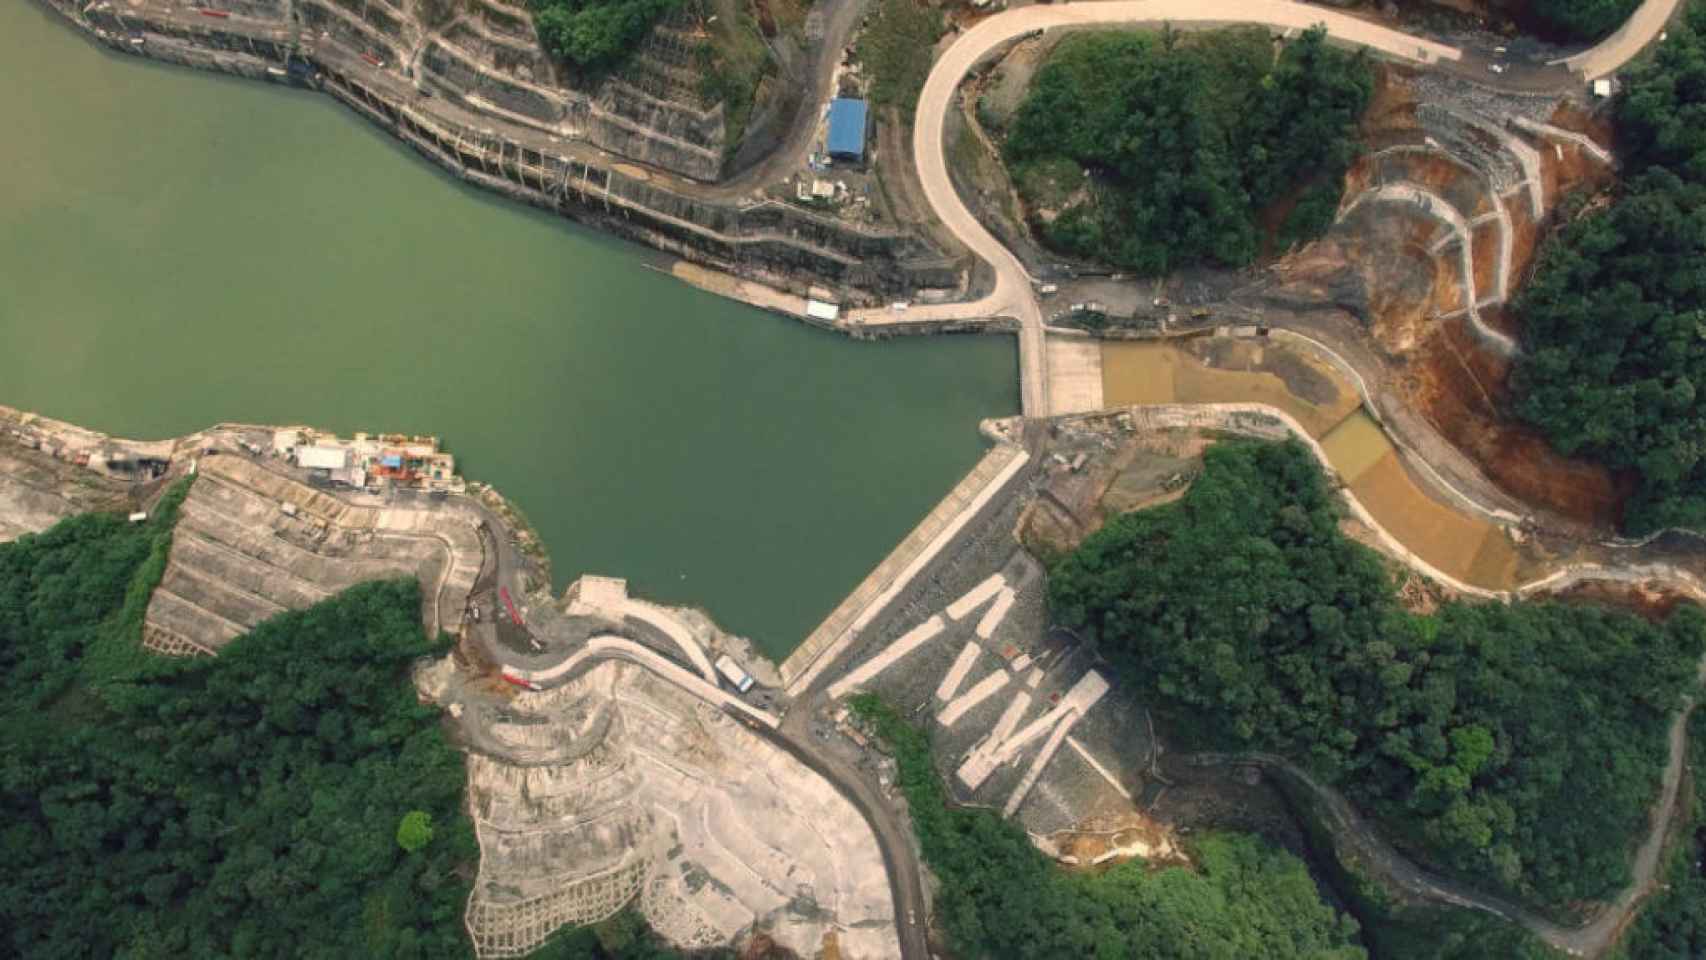 Vista aérea de la central hidroeléctrica Coca Codo.